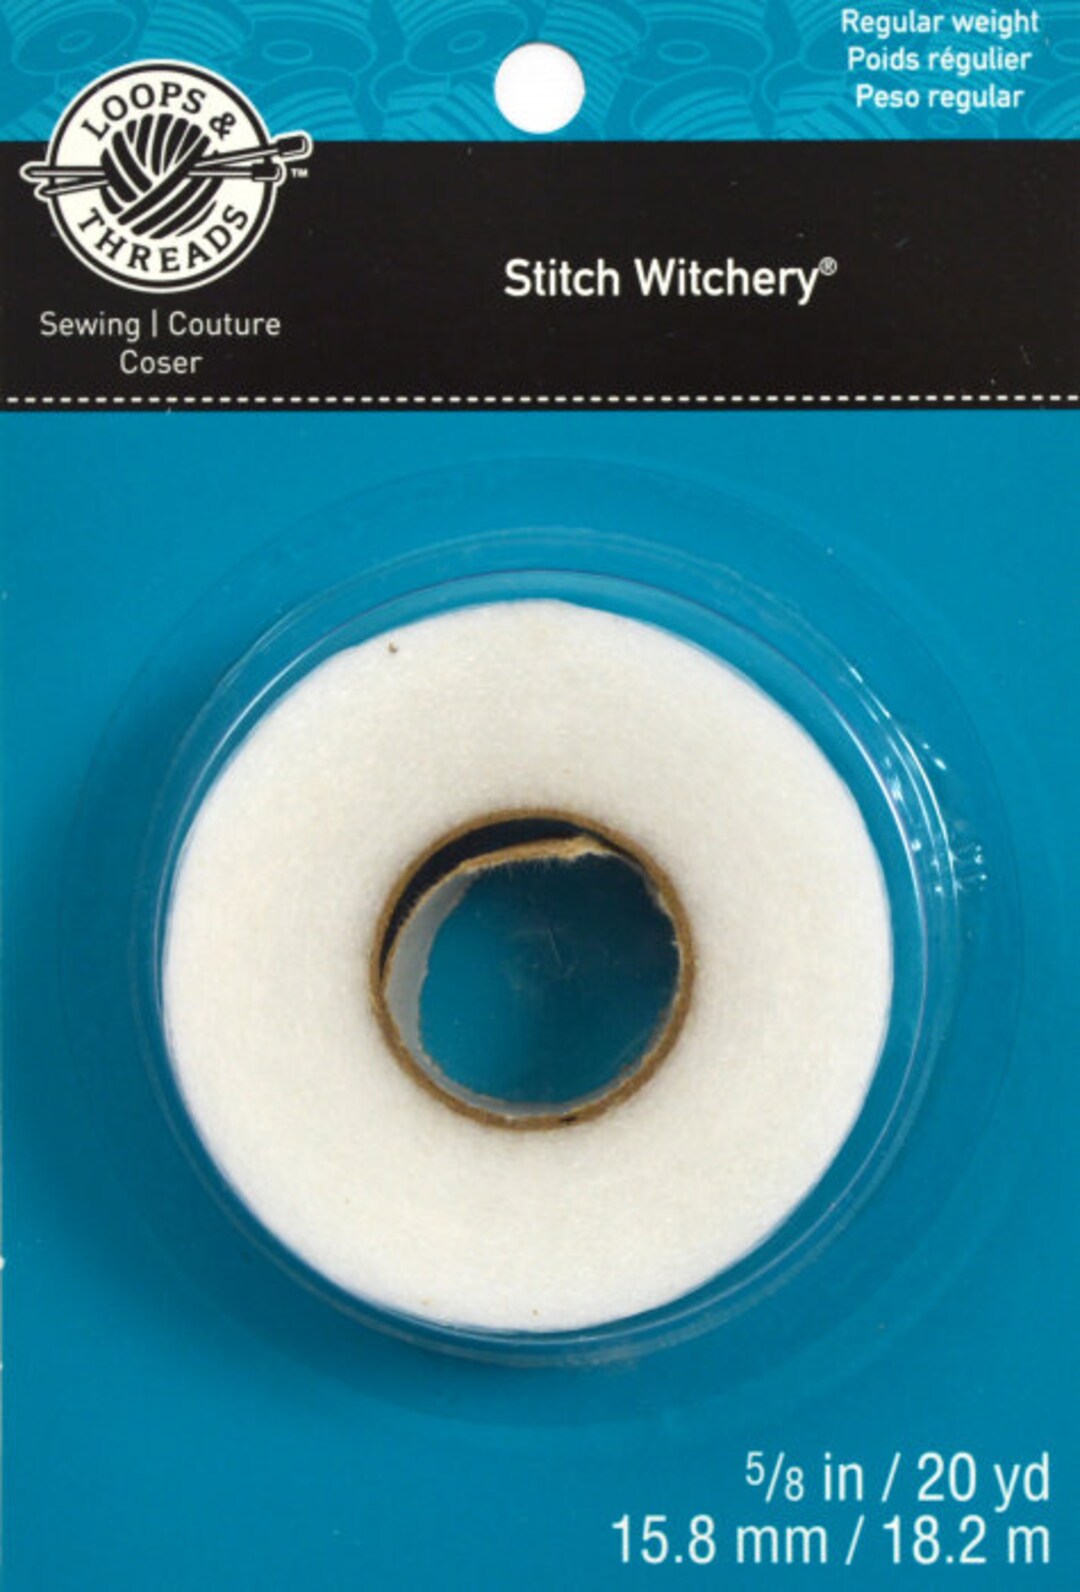 How to Use Dritz Stitch Witchery